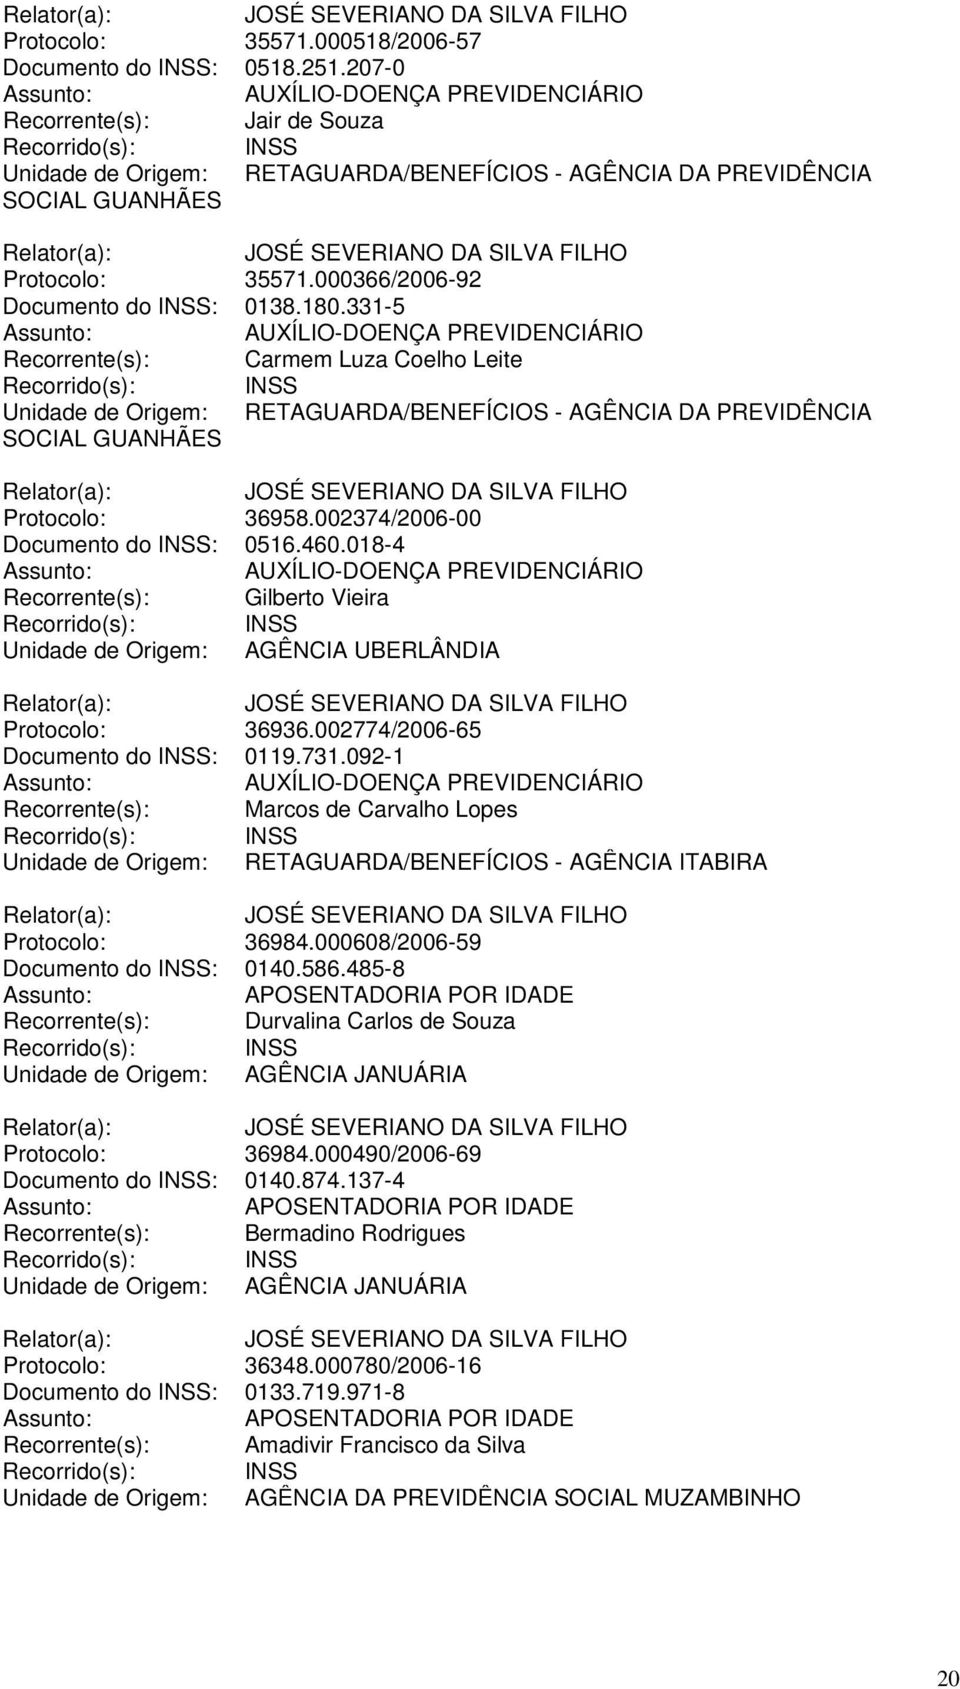 002374/2006-00 Documento do INSS: 0516.460.018-4 Recorrente(s): Gilberto Vieira Unidade de Origem: AGÊNCIA UBERLÂNDIA Protocolo: 36936.002774/2006-65 Documento do INSS: 0119.731.